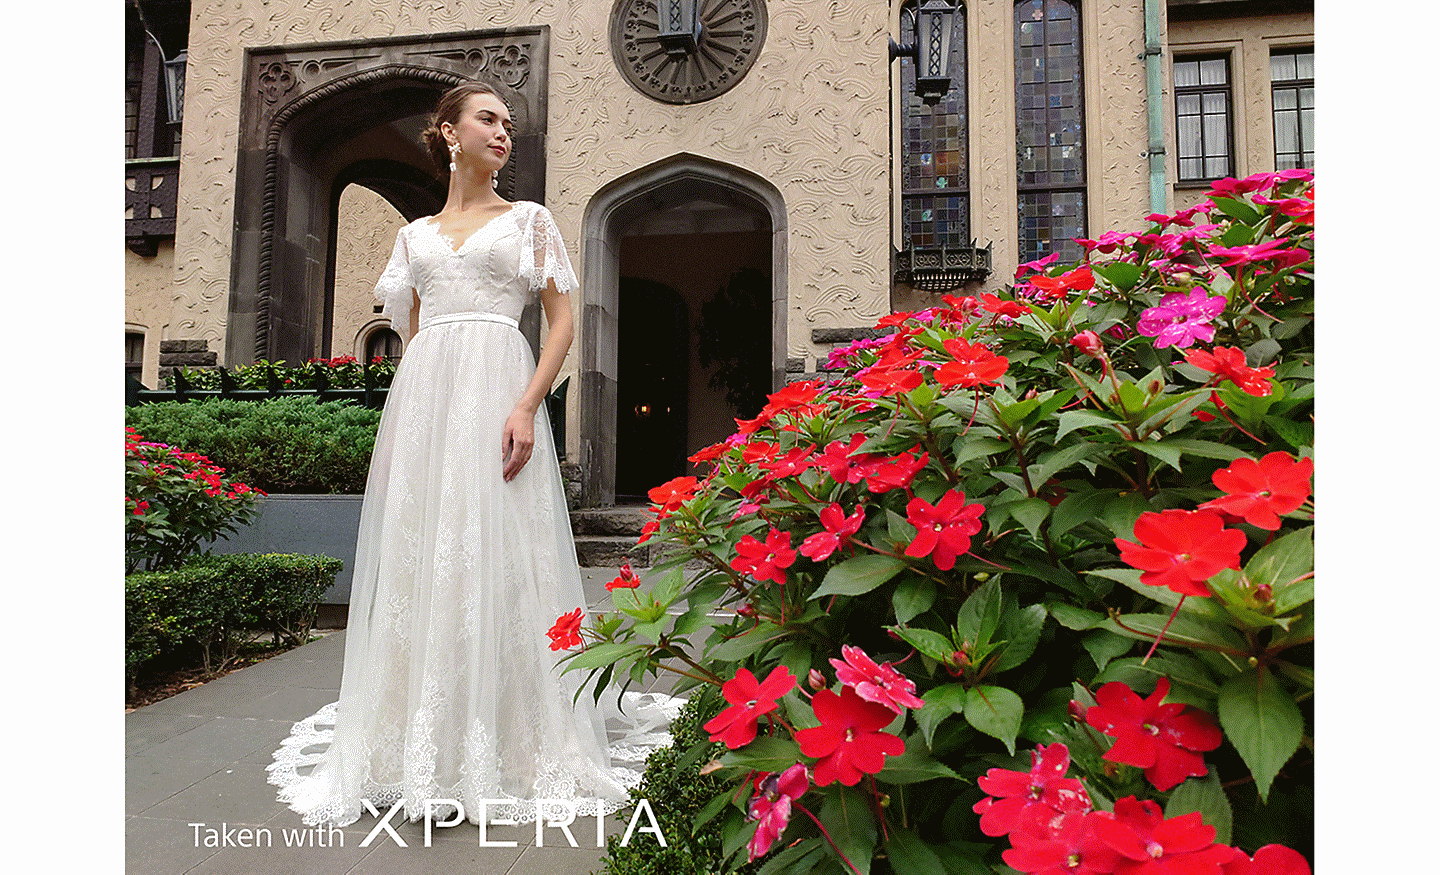 Cô dâu tạo dáng bên ngoài tòa nhà với những bông hoa màu đỏ ở tiền cảnh. Trên ảnh có dòng chữ "Taken with XPERIA” (Chụp bằng XPERIA).